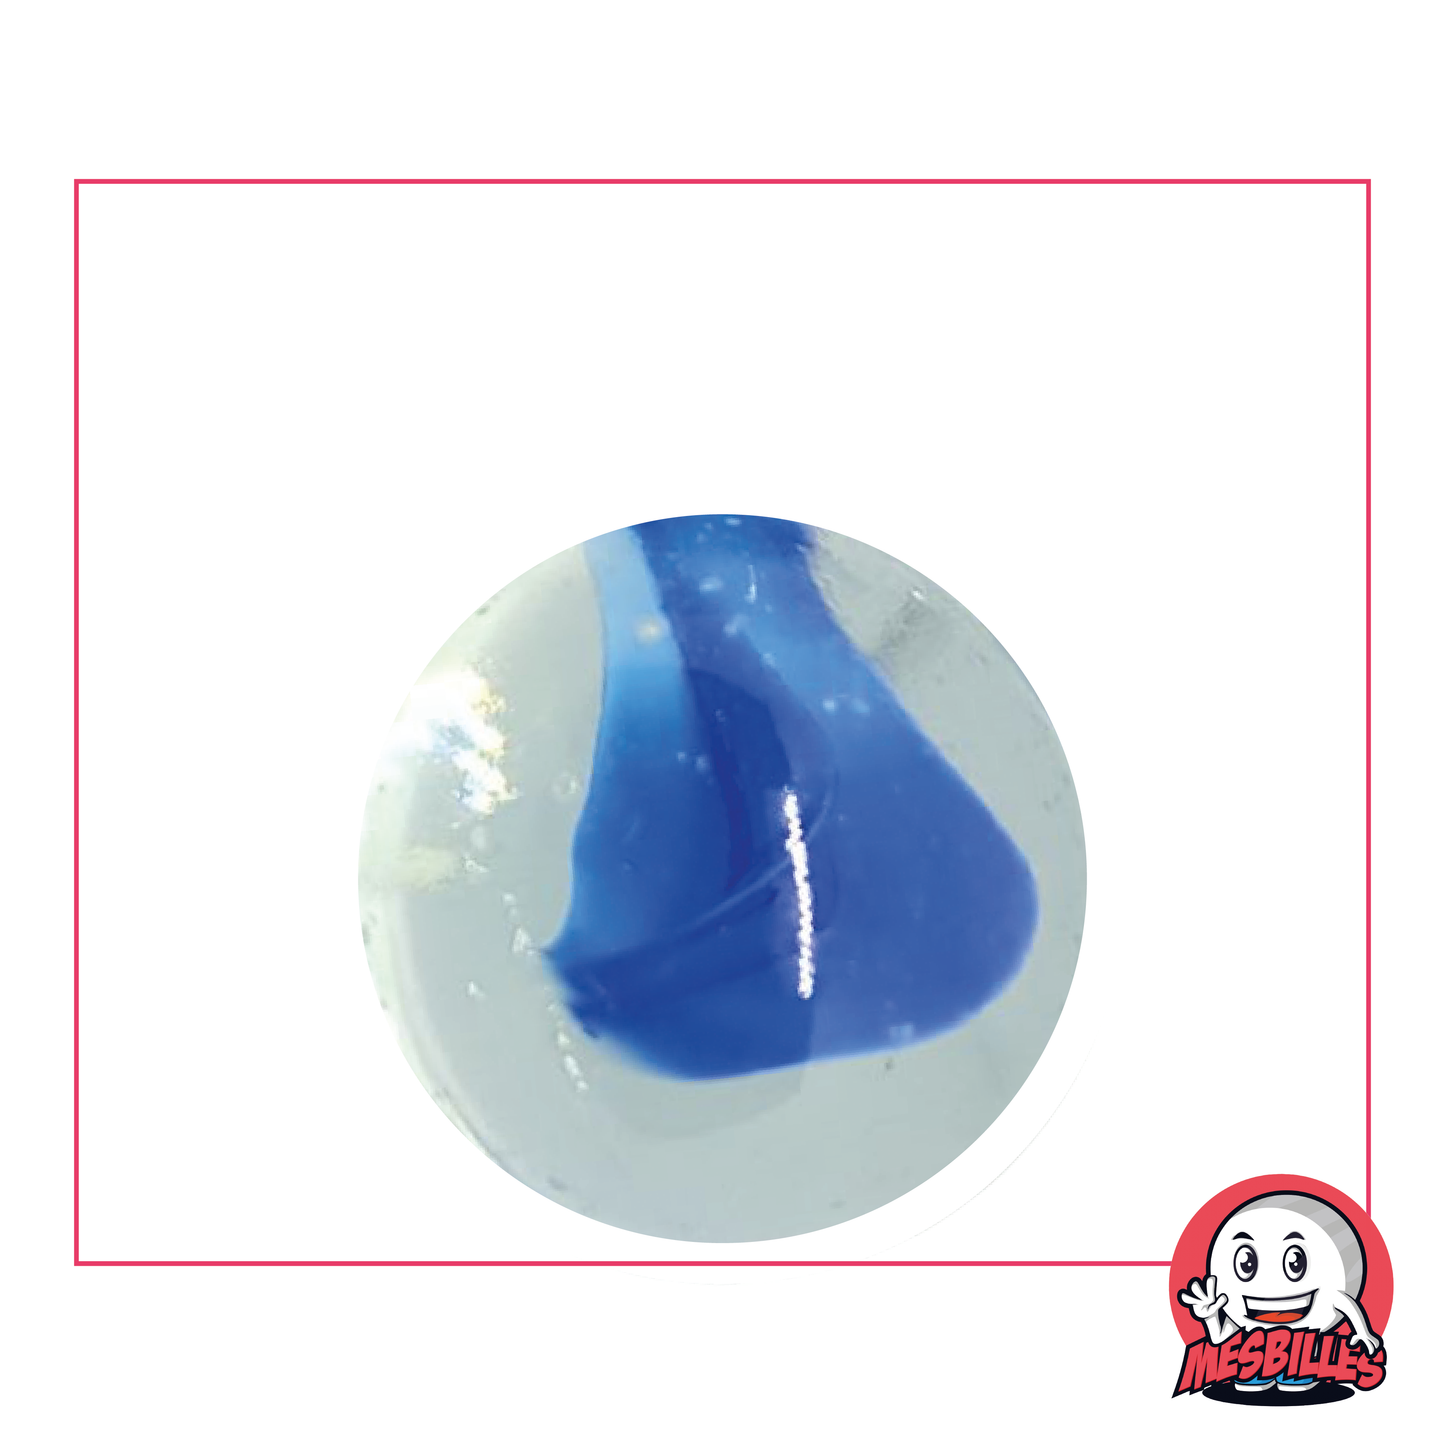 Bille en verre Ours-Blanc de 25 mm, translucide avec un cœur blanc ou bleu, une bille captivante